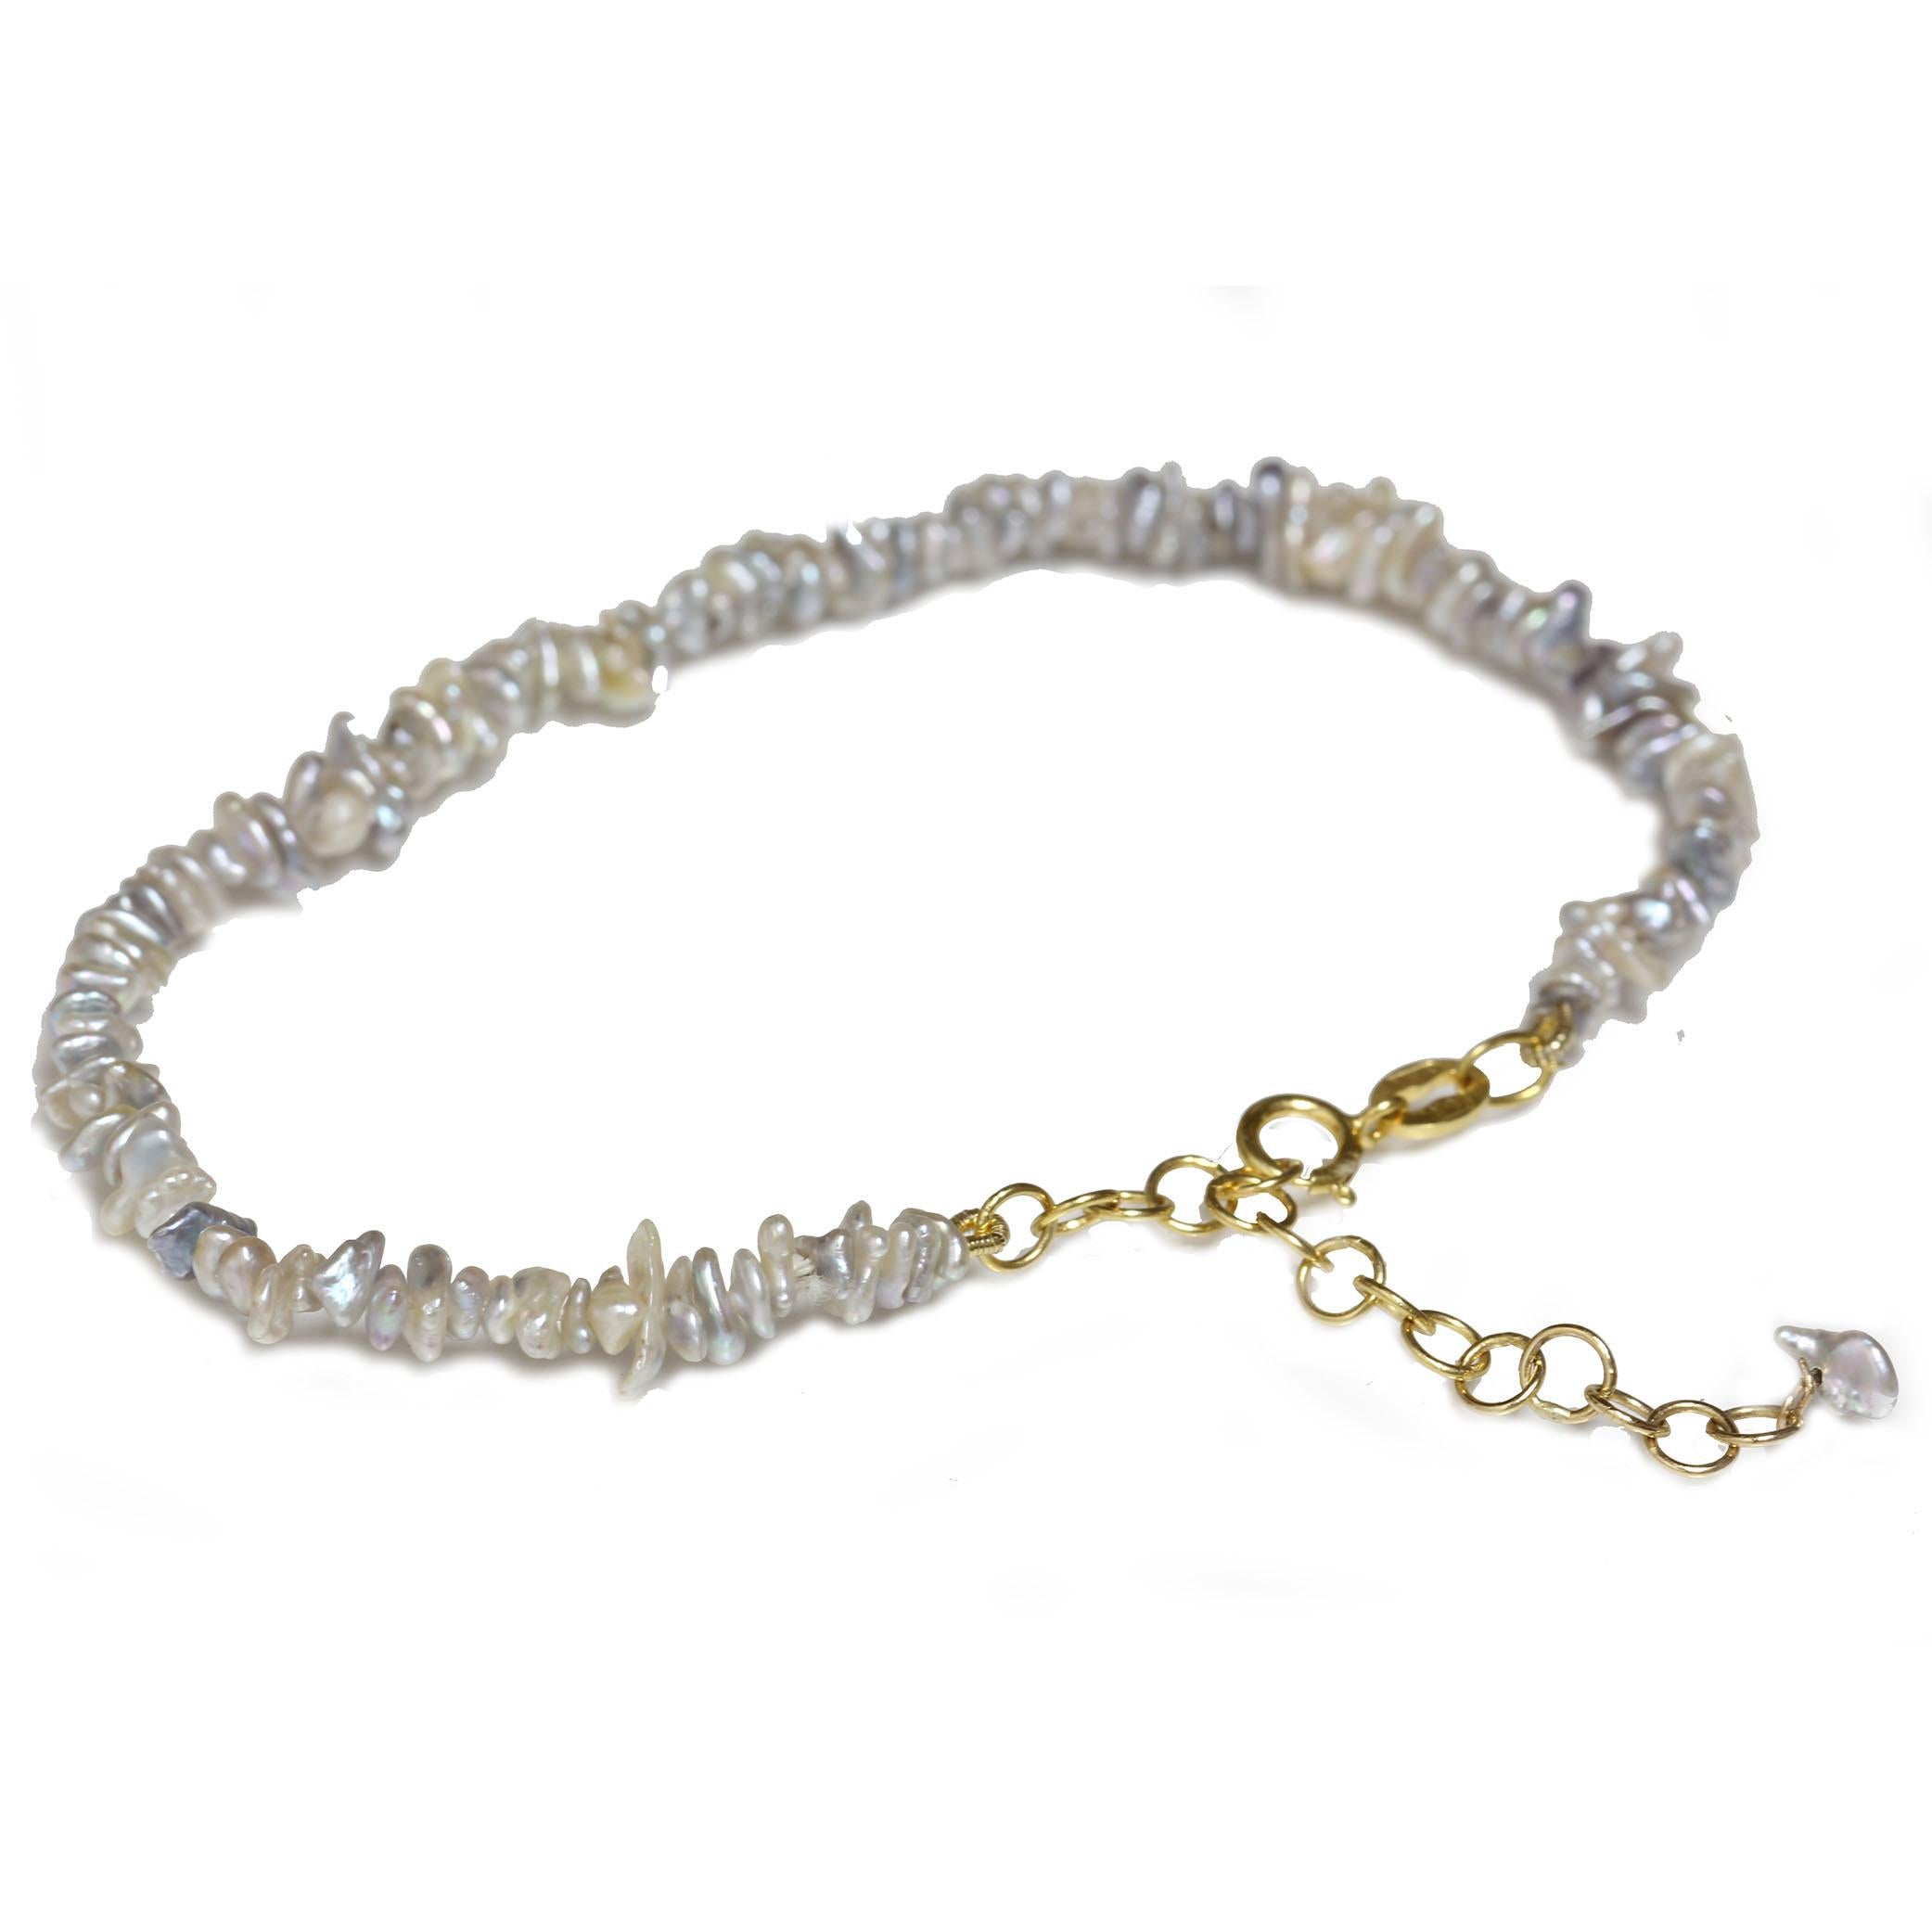 Bracelet de perles akoya keshi de 3 à 4 mm, de forme baroque et de couleur bleu argenté.  Très grande brillance et qualité. La longueur totale est de 7